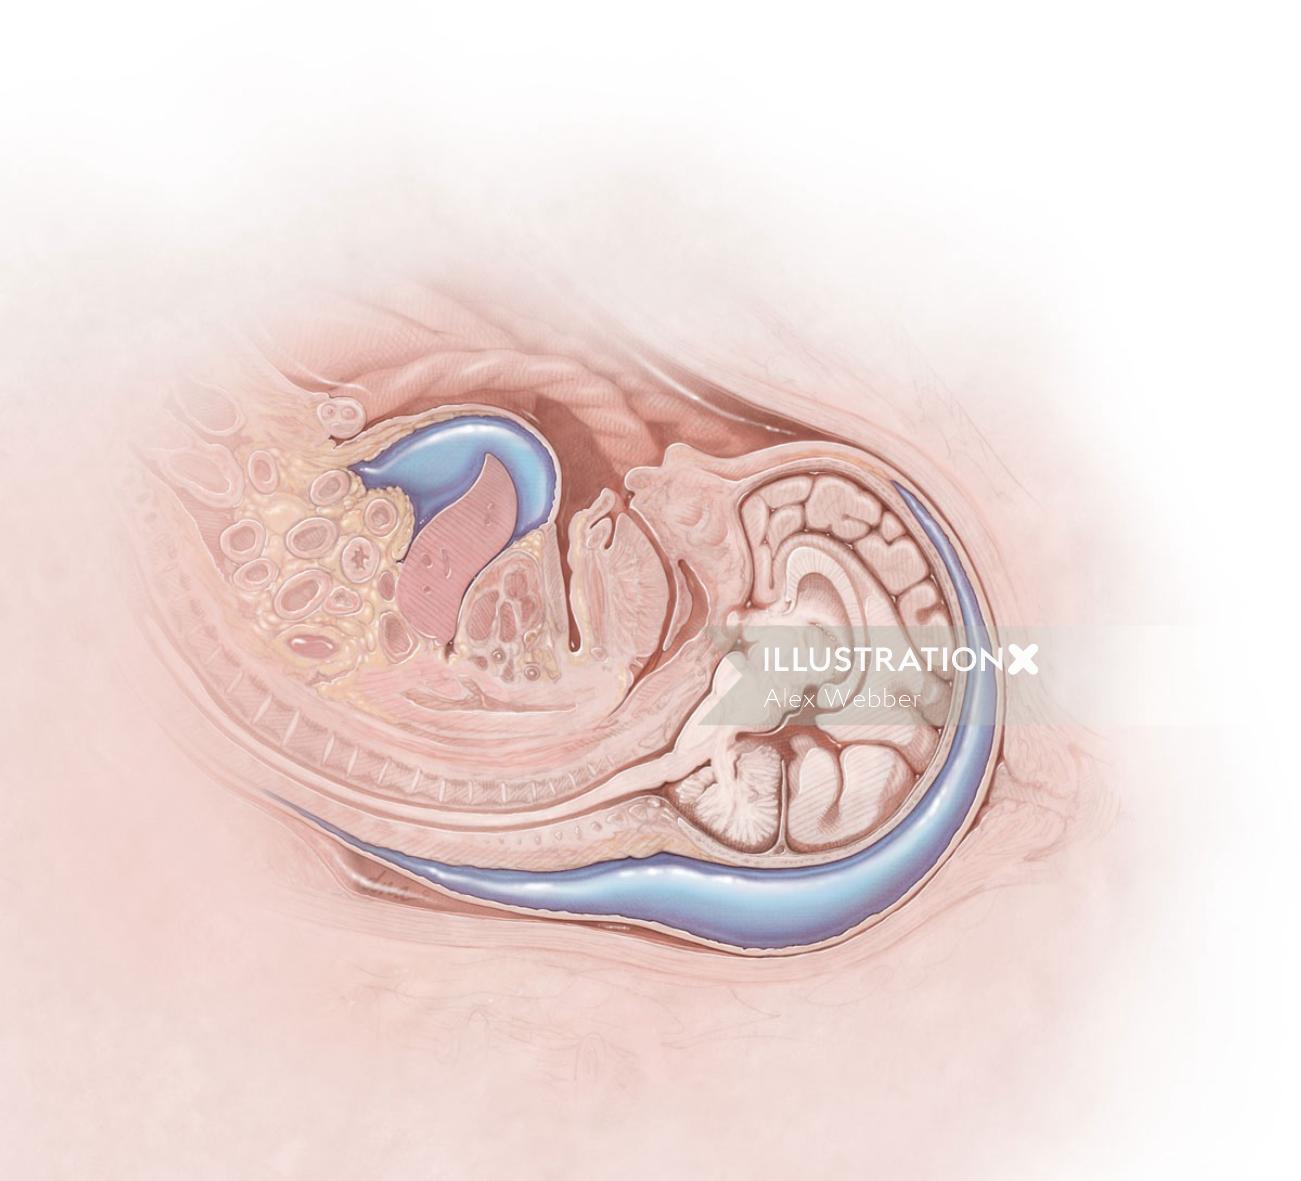 Arte conceitual do Fetal Hydrops for Medical Magazine por Alex Webber